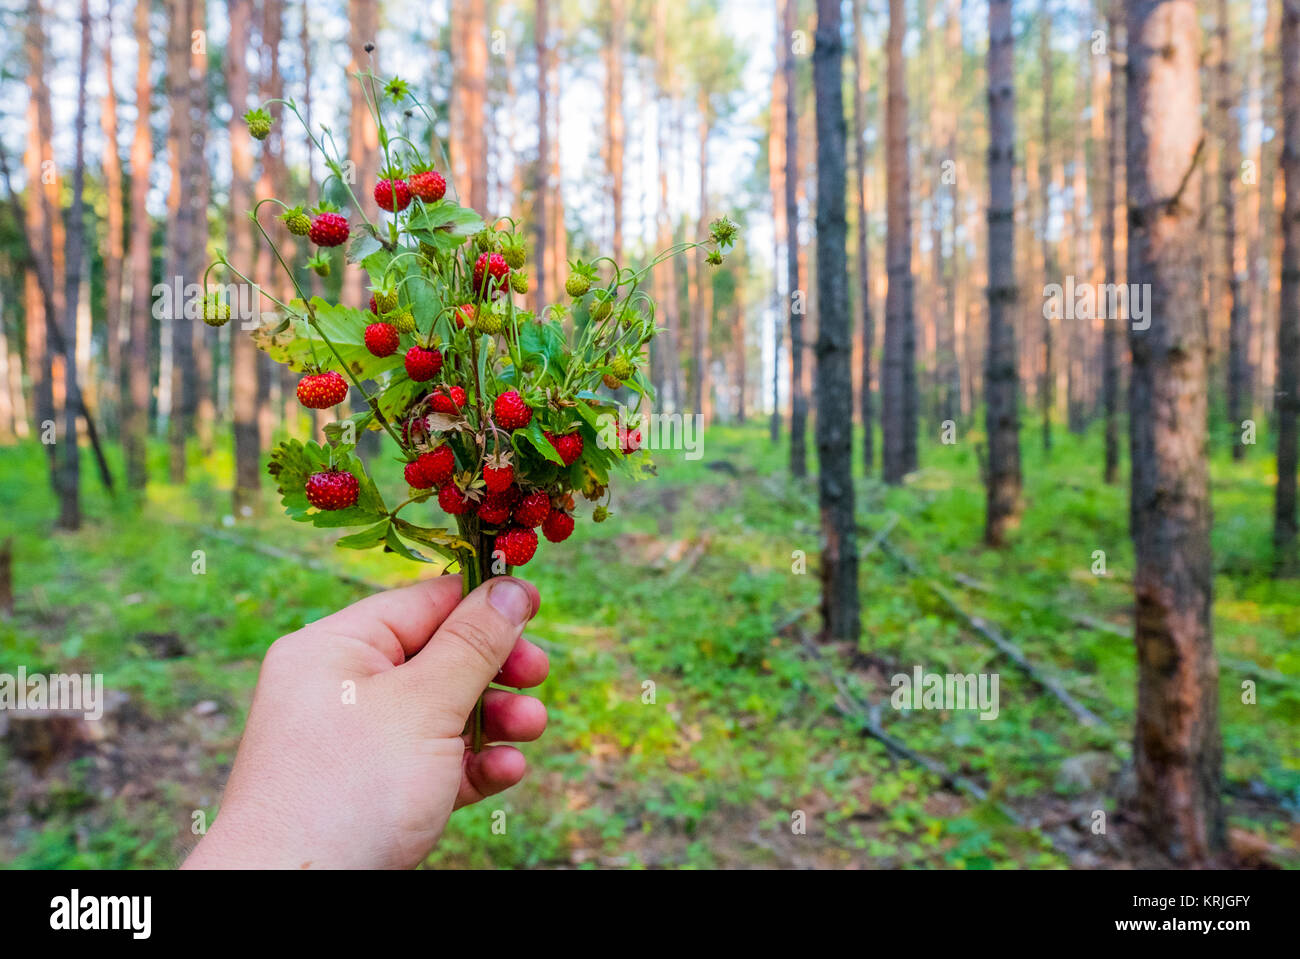 Mano sujetando el ramo de fresas de bosque Foto de stock